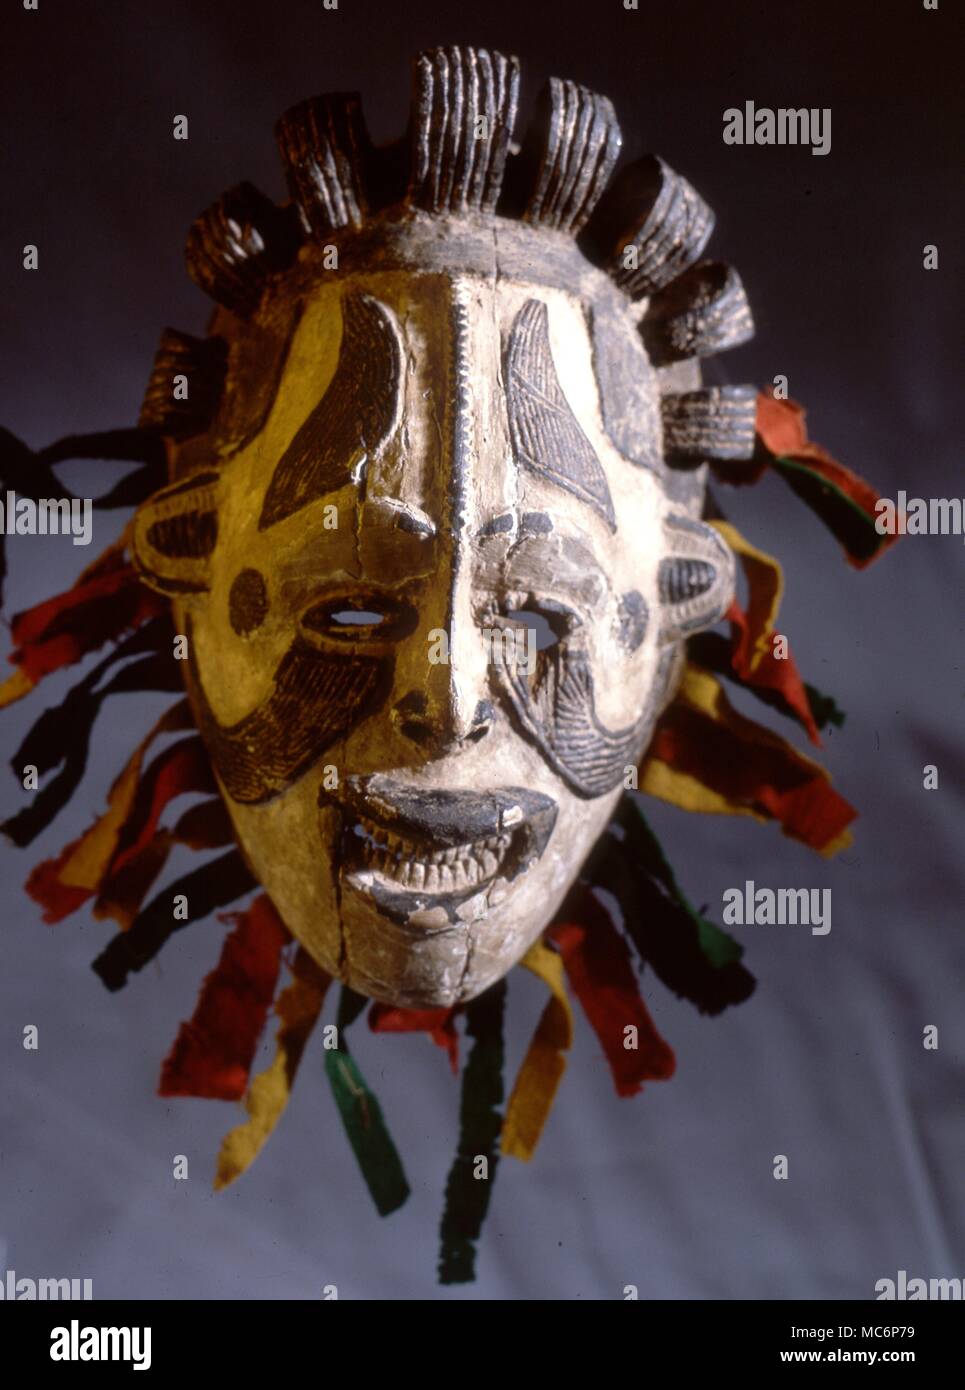 Magica africana - Igbo Maiden spirito maschera indossata da uomini che imitano le attività delle donne per motivi magici durante certi rituali - soprattutto in occasione dei funerali e feste. Gordon Reece Gallery Foto Stock